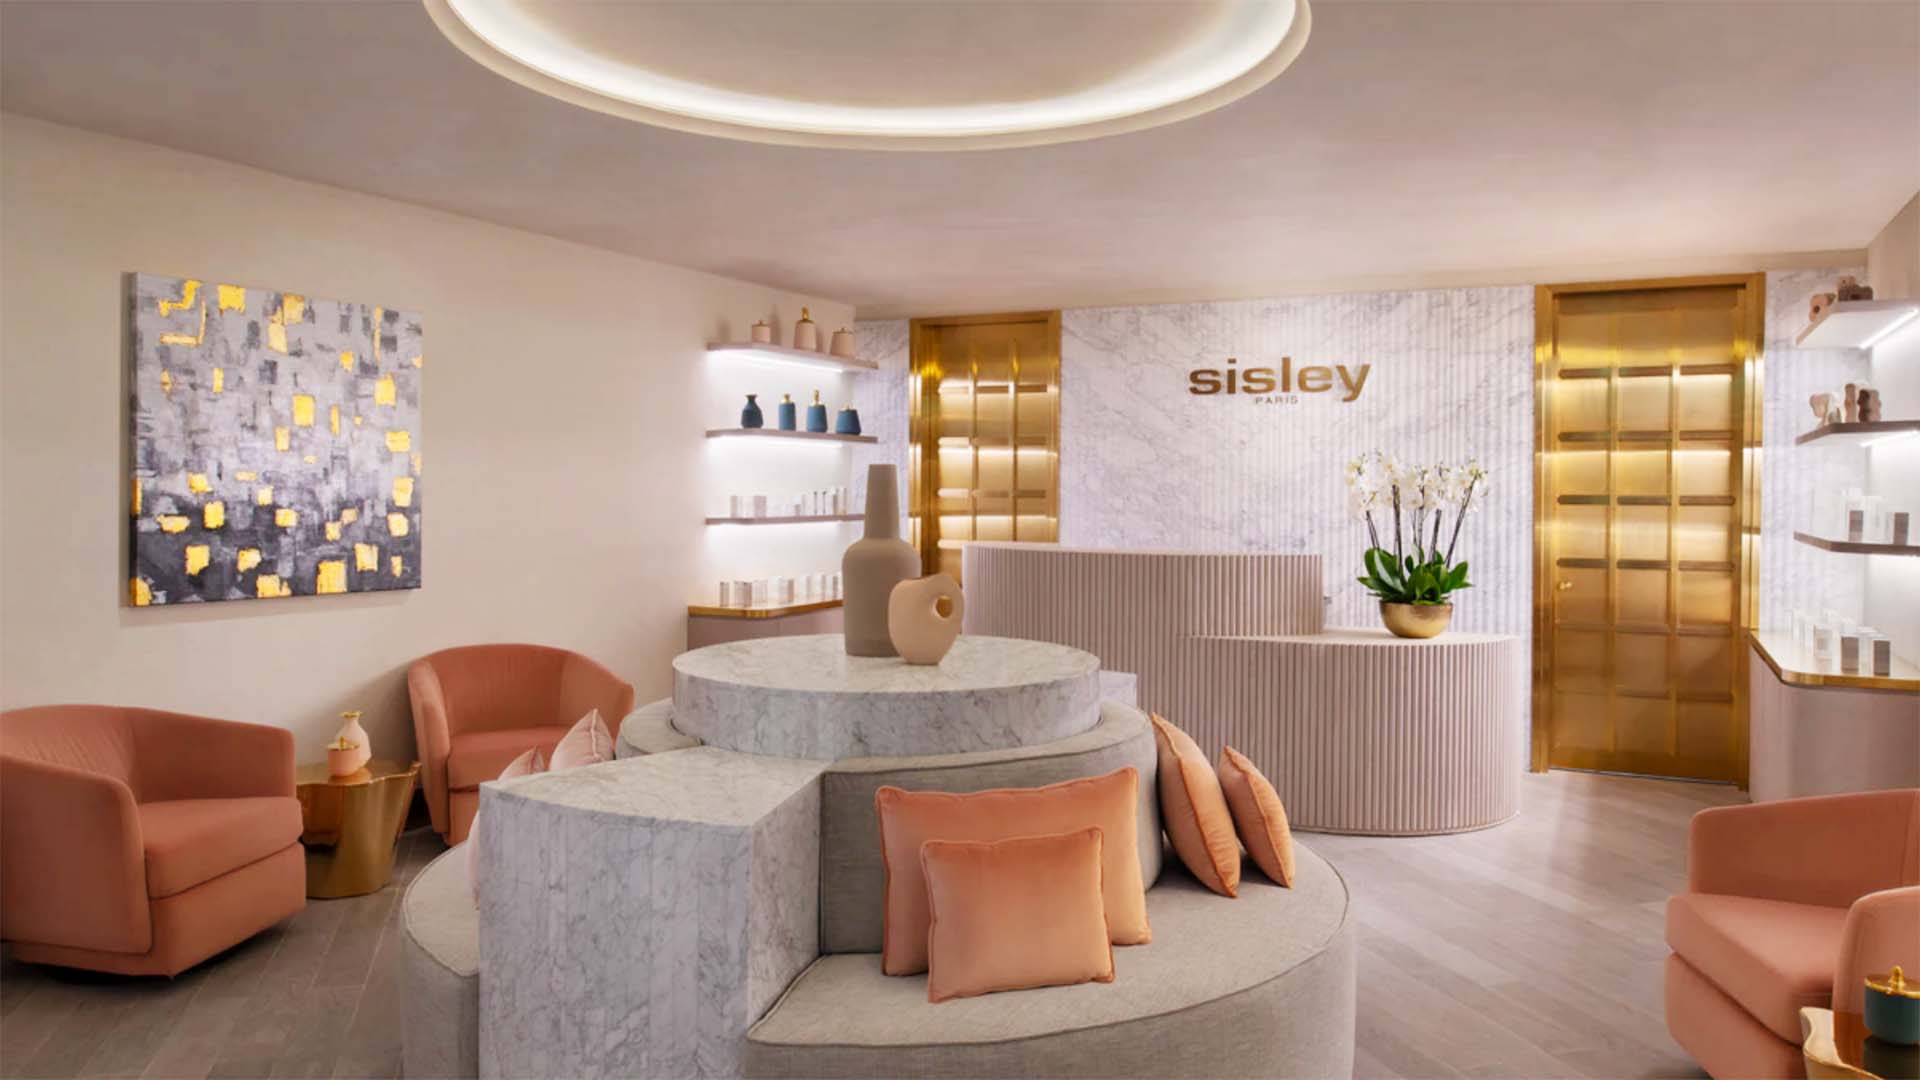 Sisley Paris spa waiting room at W Doha